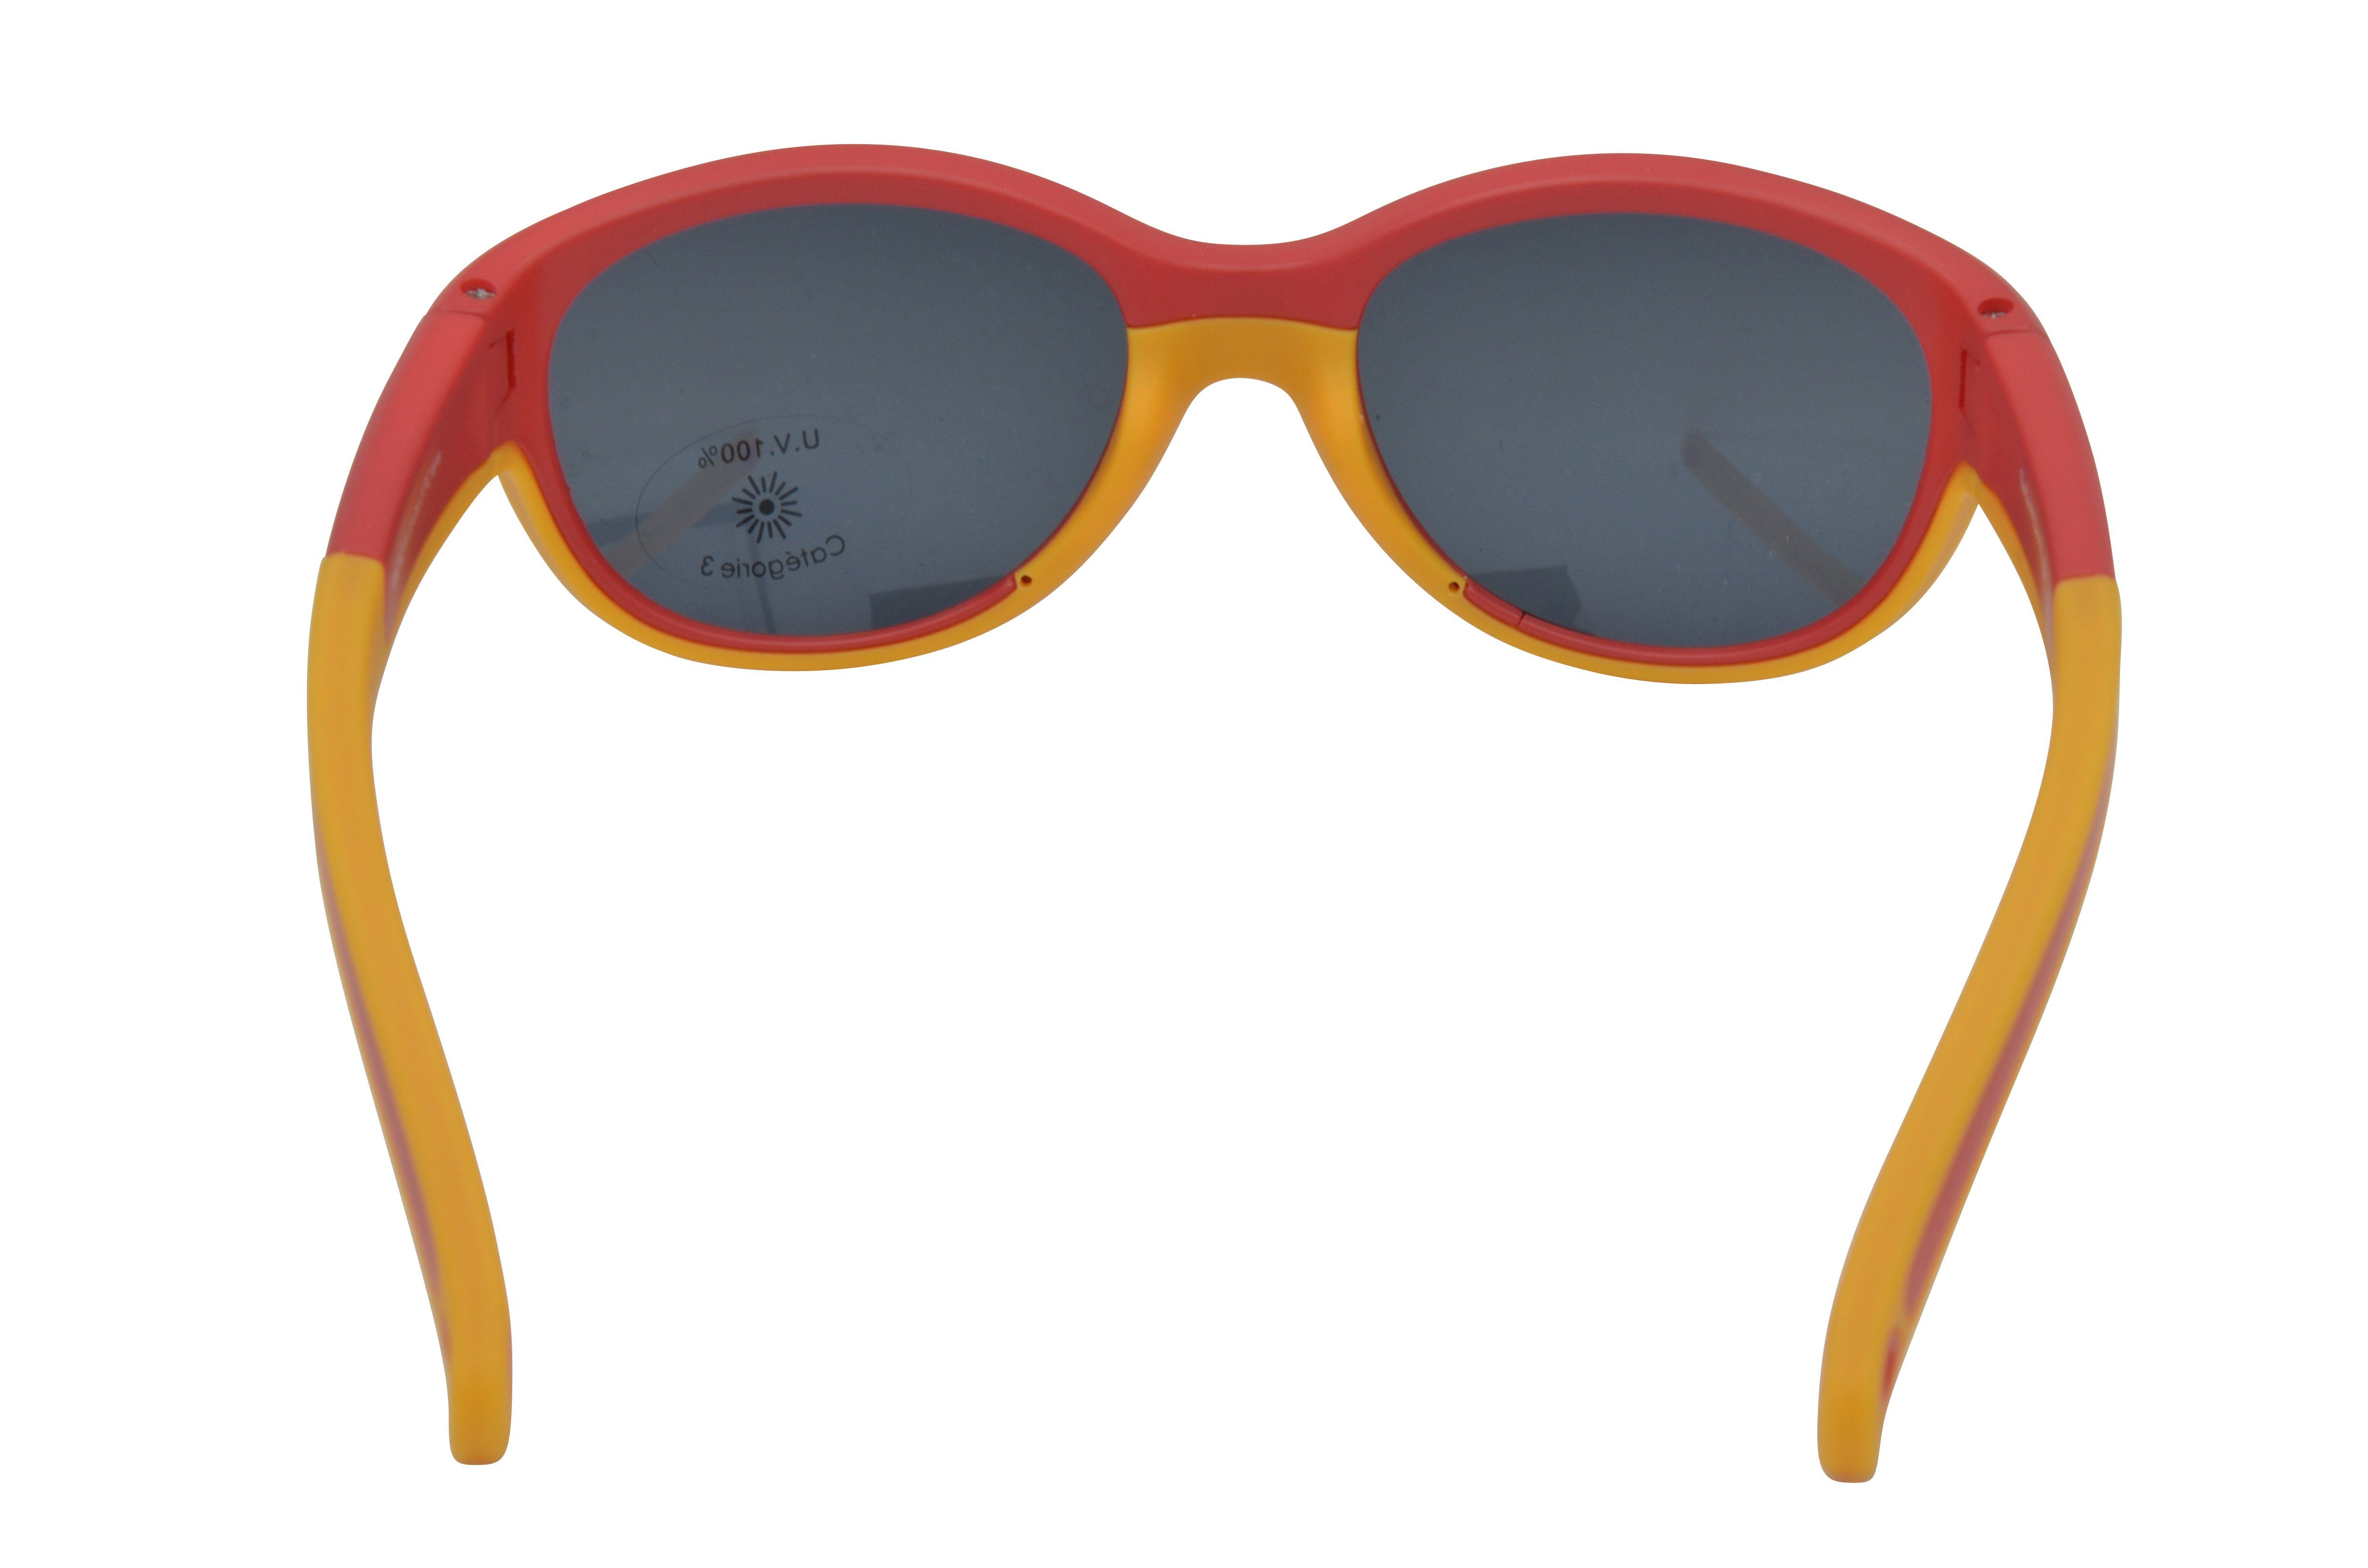 Gamswild Sonnenbrille Mädchen Brillenband GAMSKIDS Kleinkindbrille incl. Unisex, Jahre kids 2-5 Jungen rot-orange mintgrün, WK7421 pink, Kinderbrille